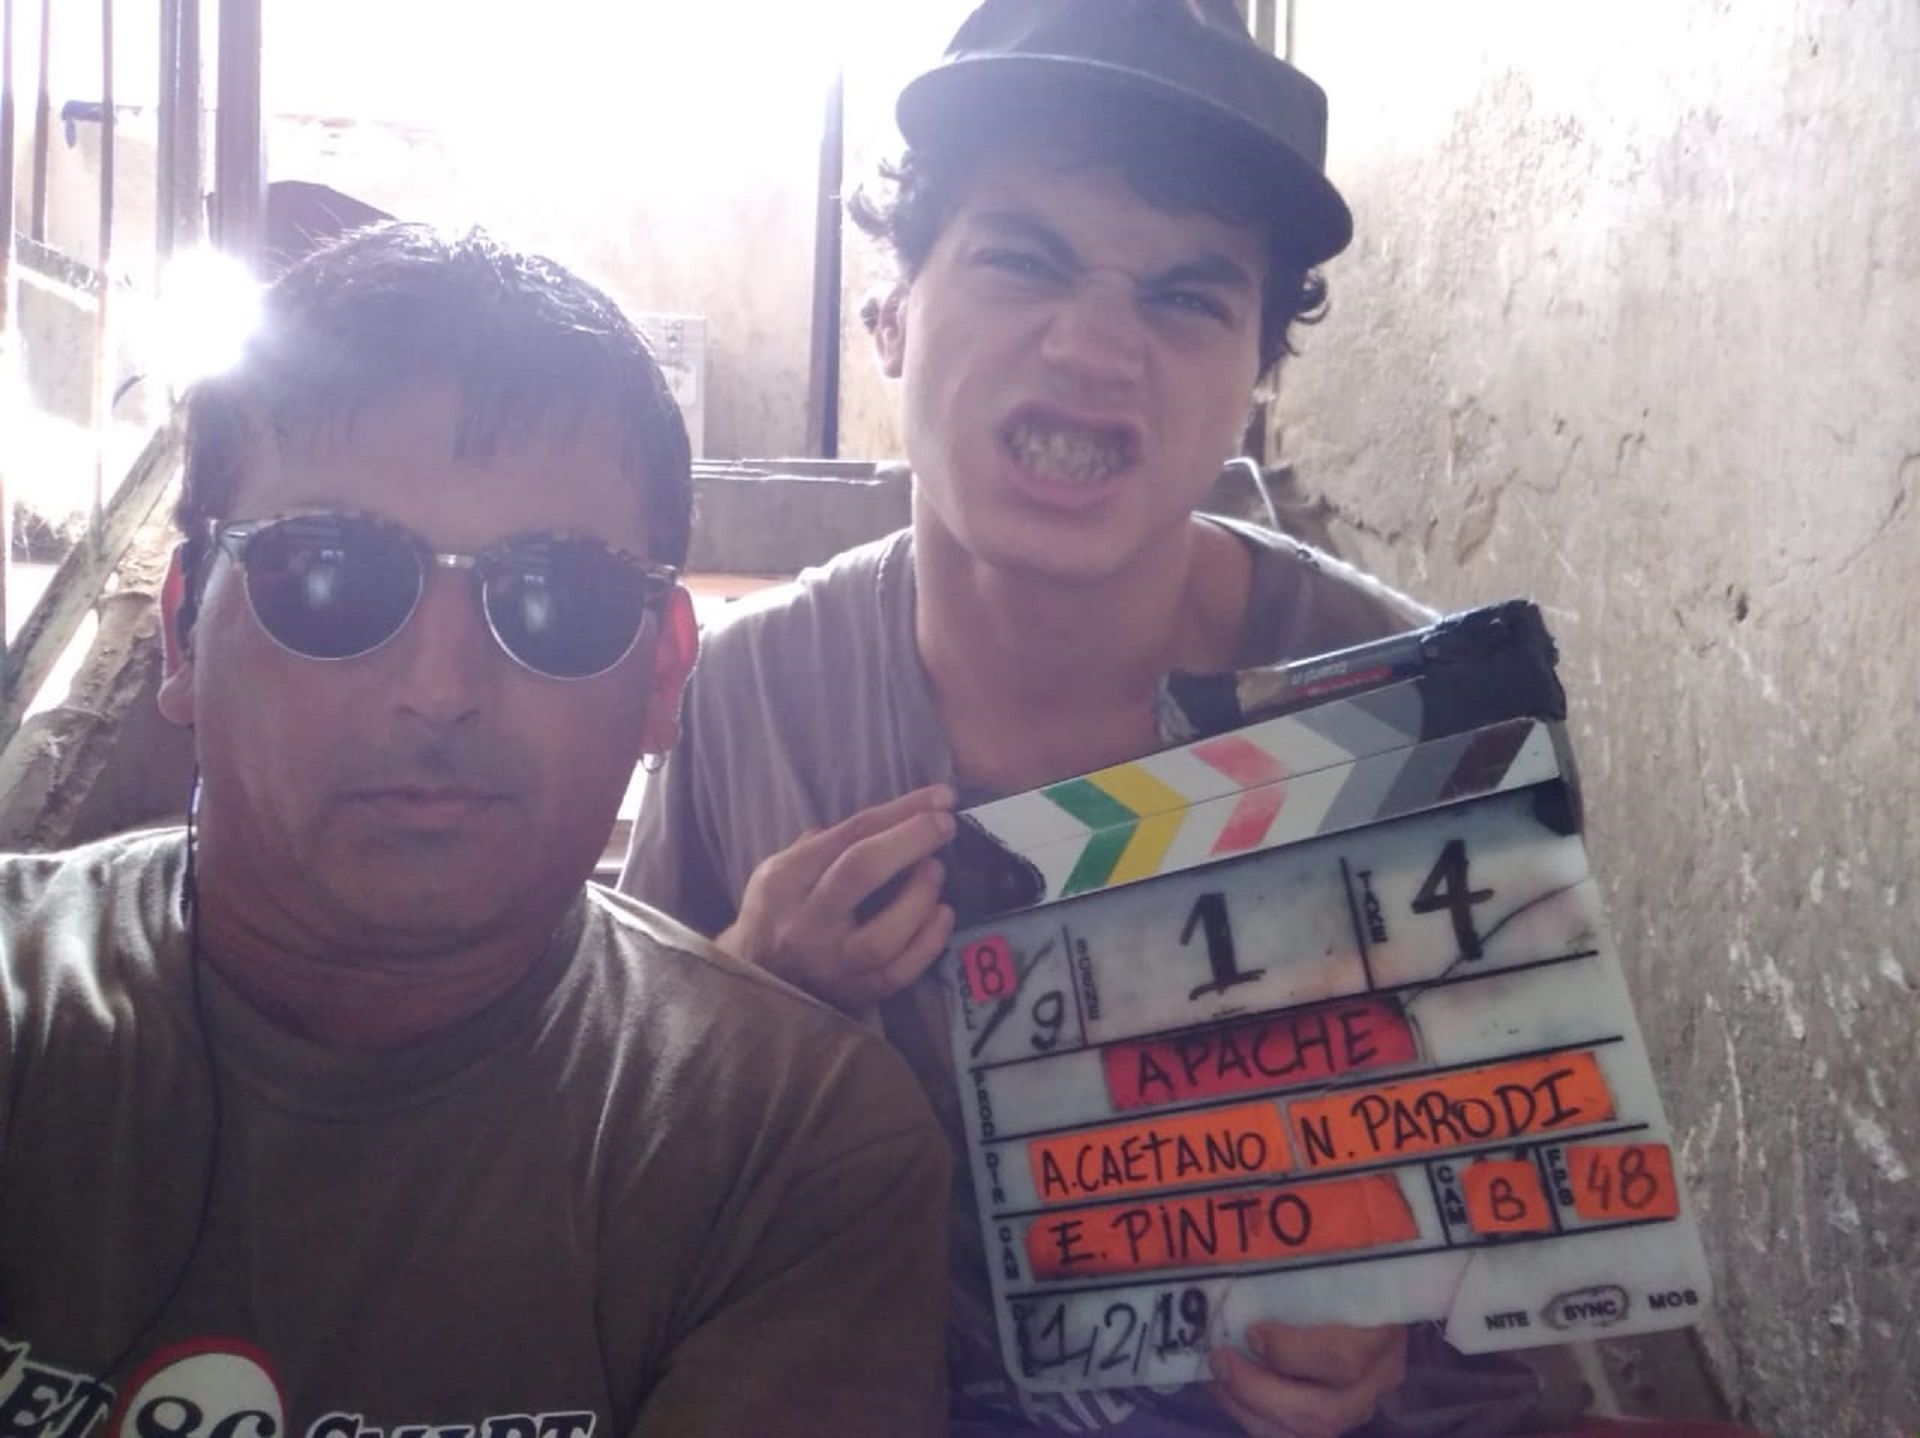 En back de "Apache", Gregorio Barrio se divierte con los técnicos y productores (Instagram)